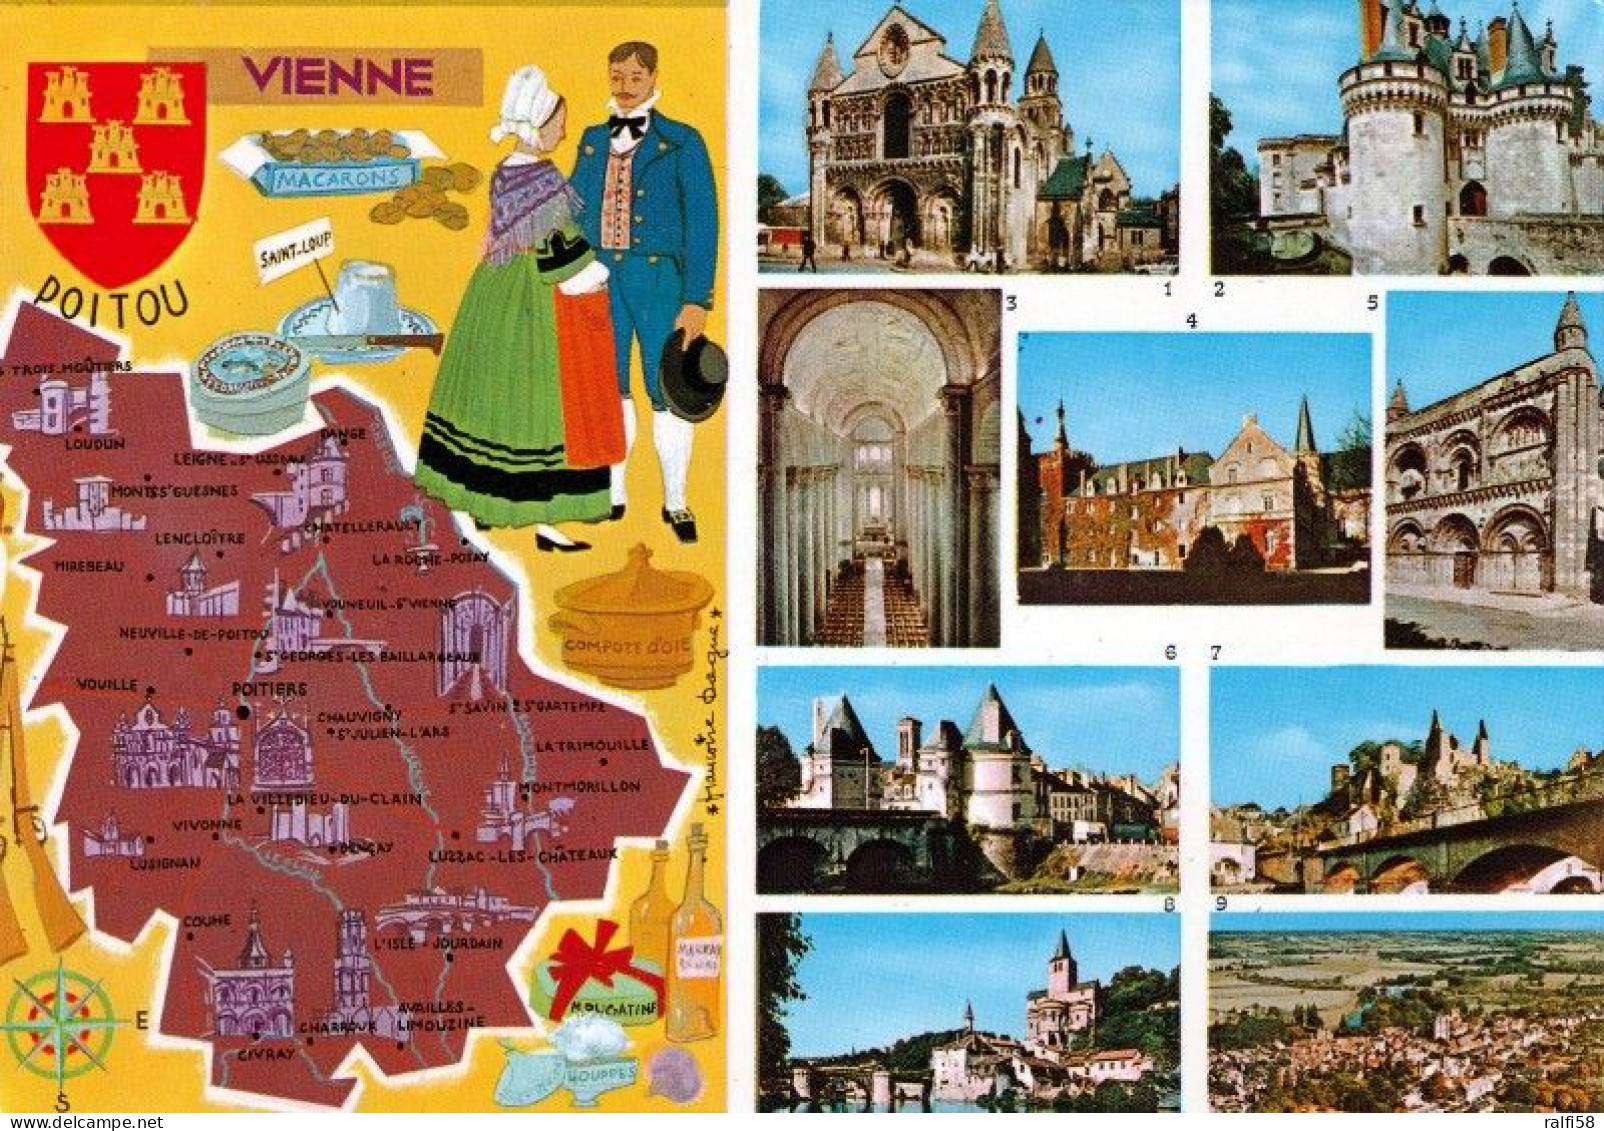 1 Map Of France * 1 Ansichtskarte Mit Der Landkarte - Département Vienne - Ordnungsnummer 86 * - Landkaarten